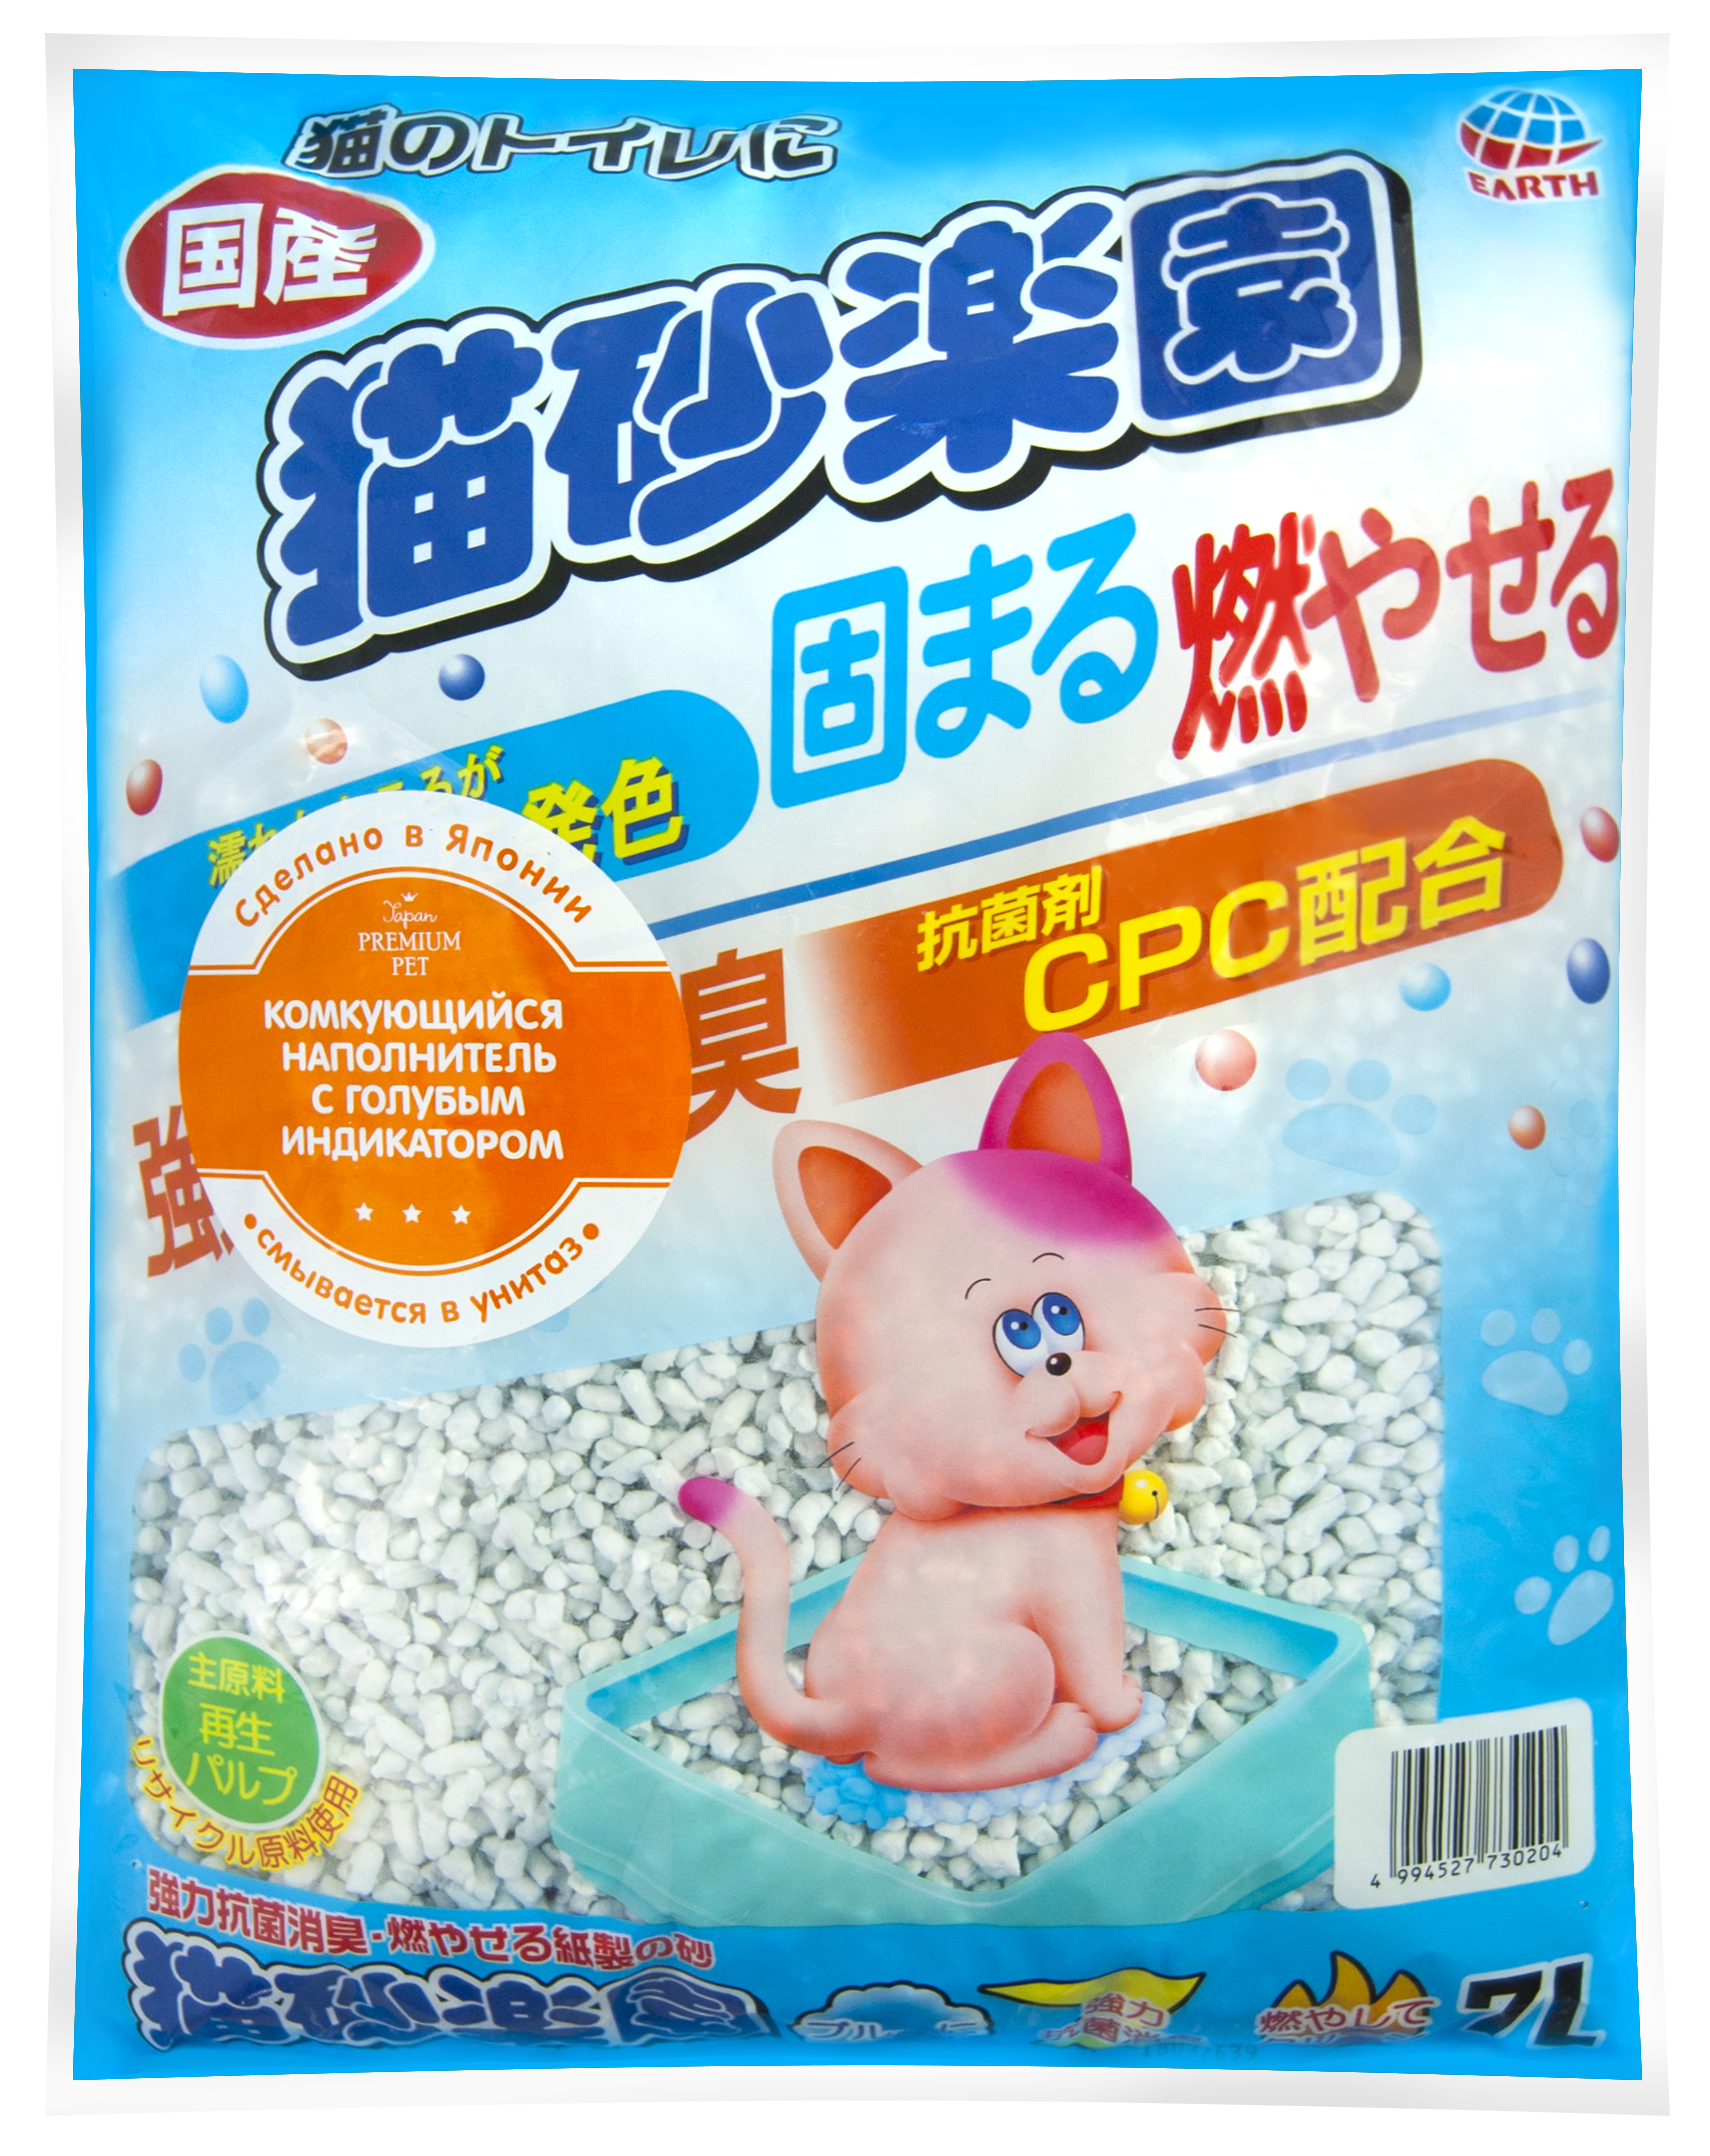 Japan Premium Pet Наполнитель комкующийся с голубым индикатором, 7л